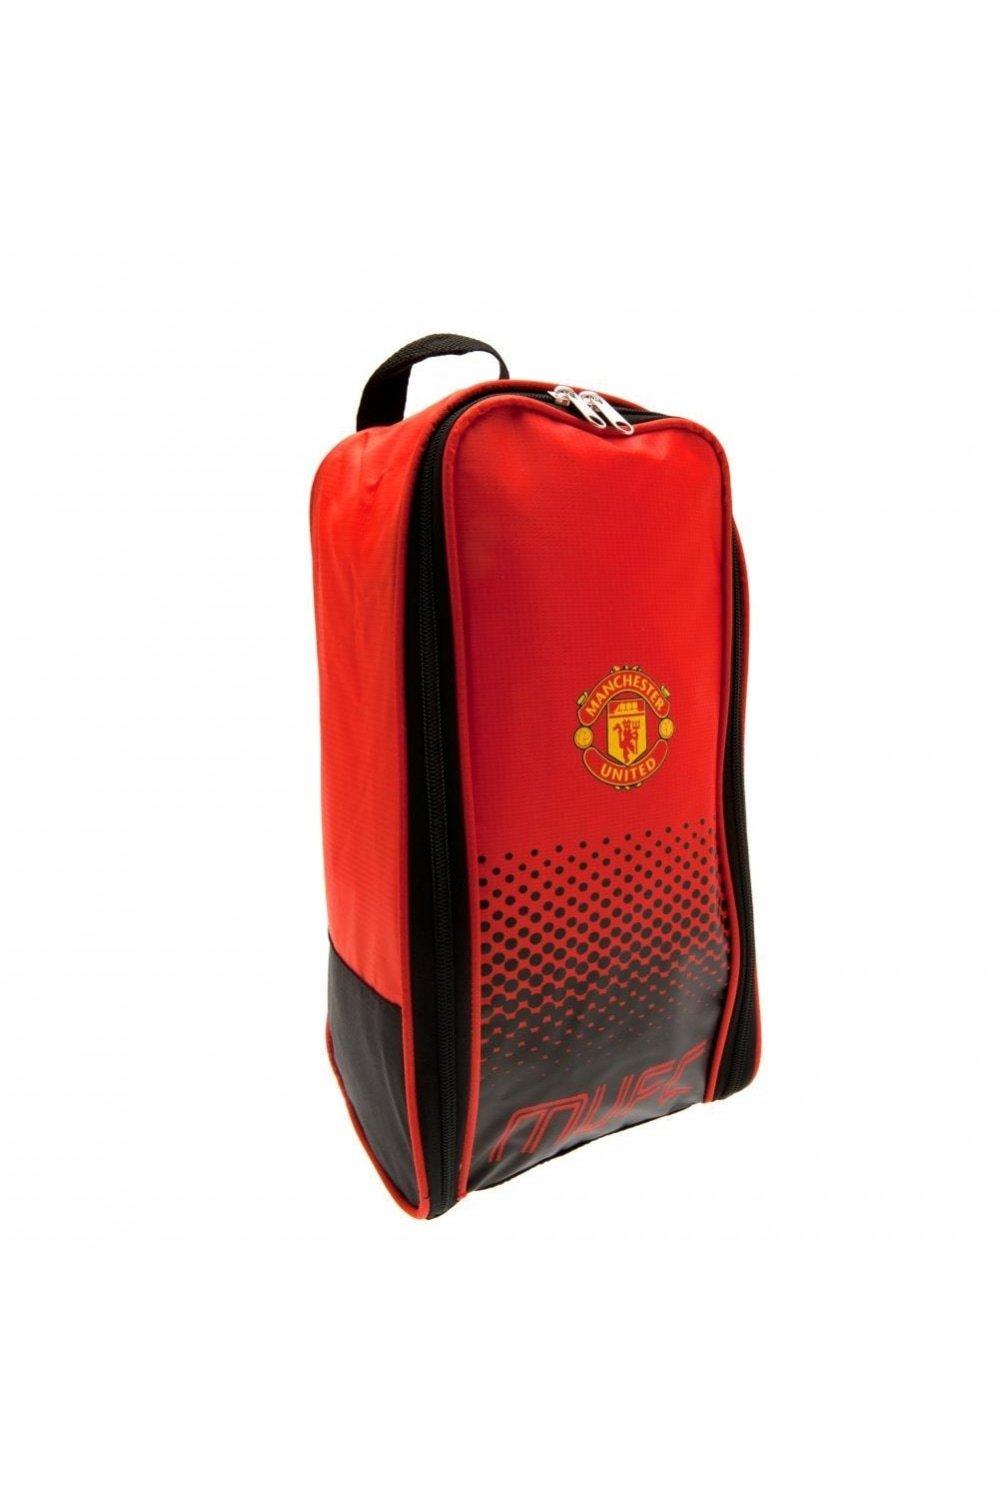 Сумка для обуви Fade Design Manchester United FC, красный